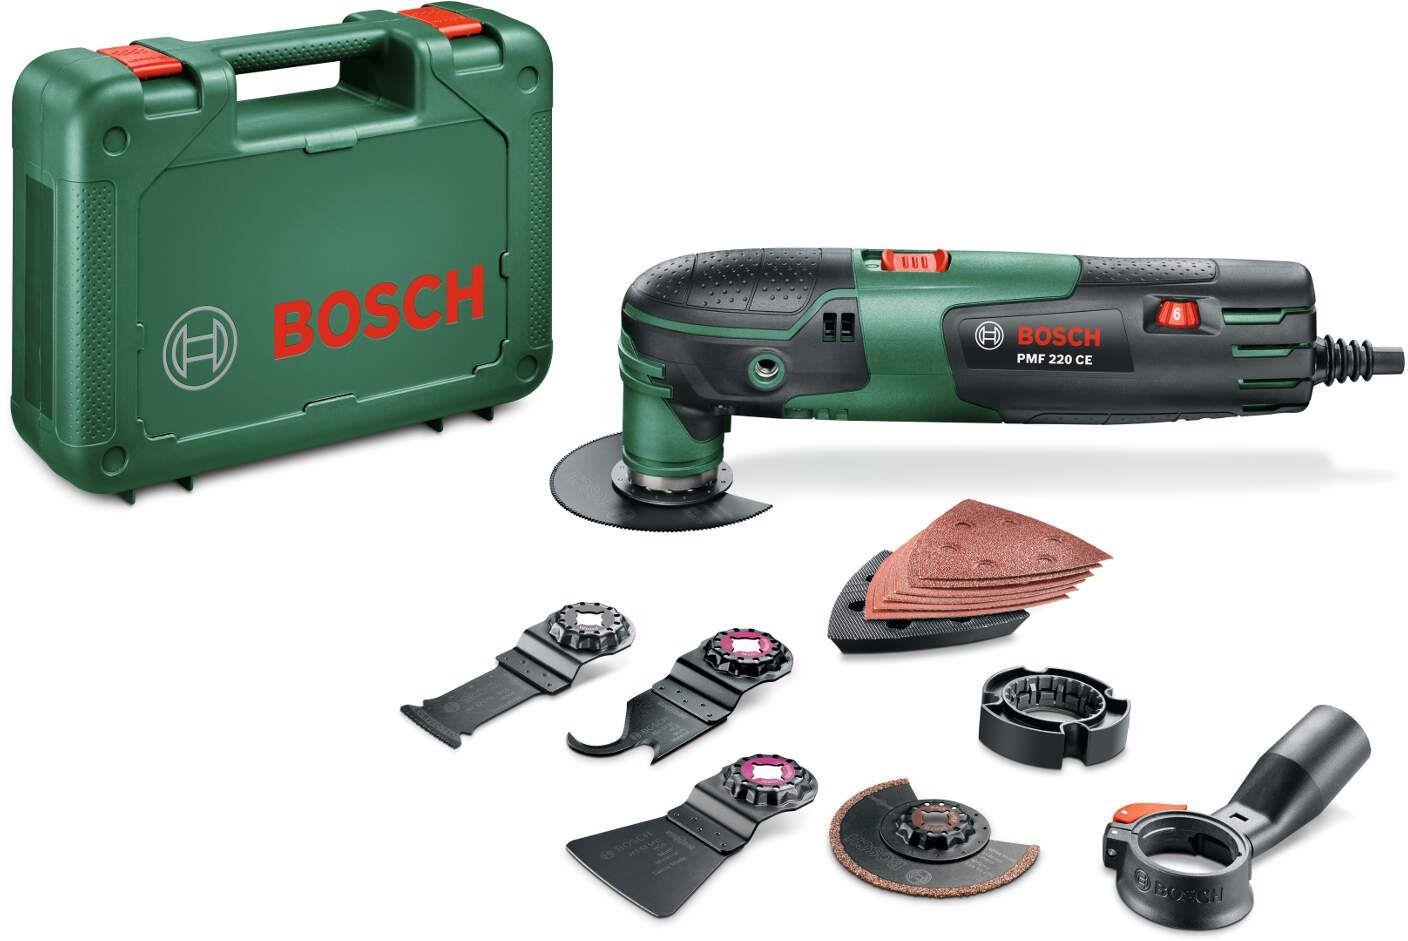 Bosch PMF 220 CE Višenamenski alat-renovator, 220W + set alata, Plastični kofer, 0603102001